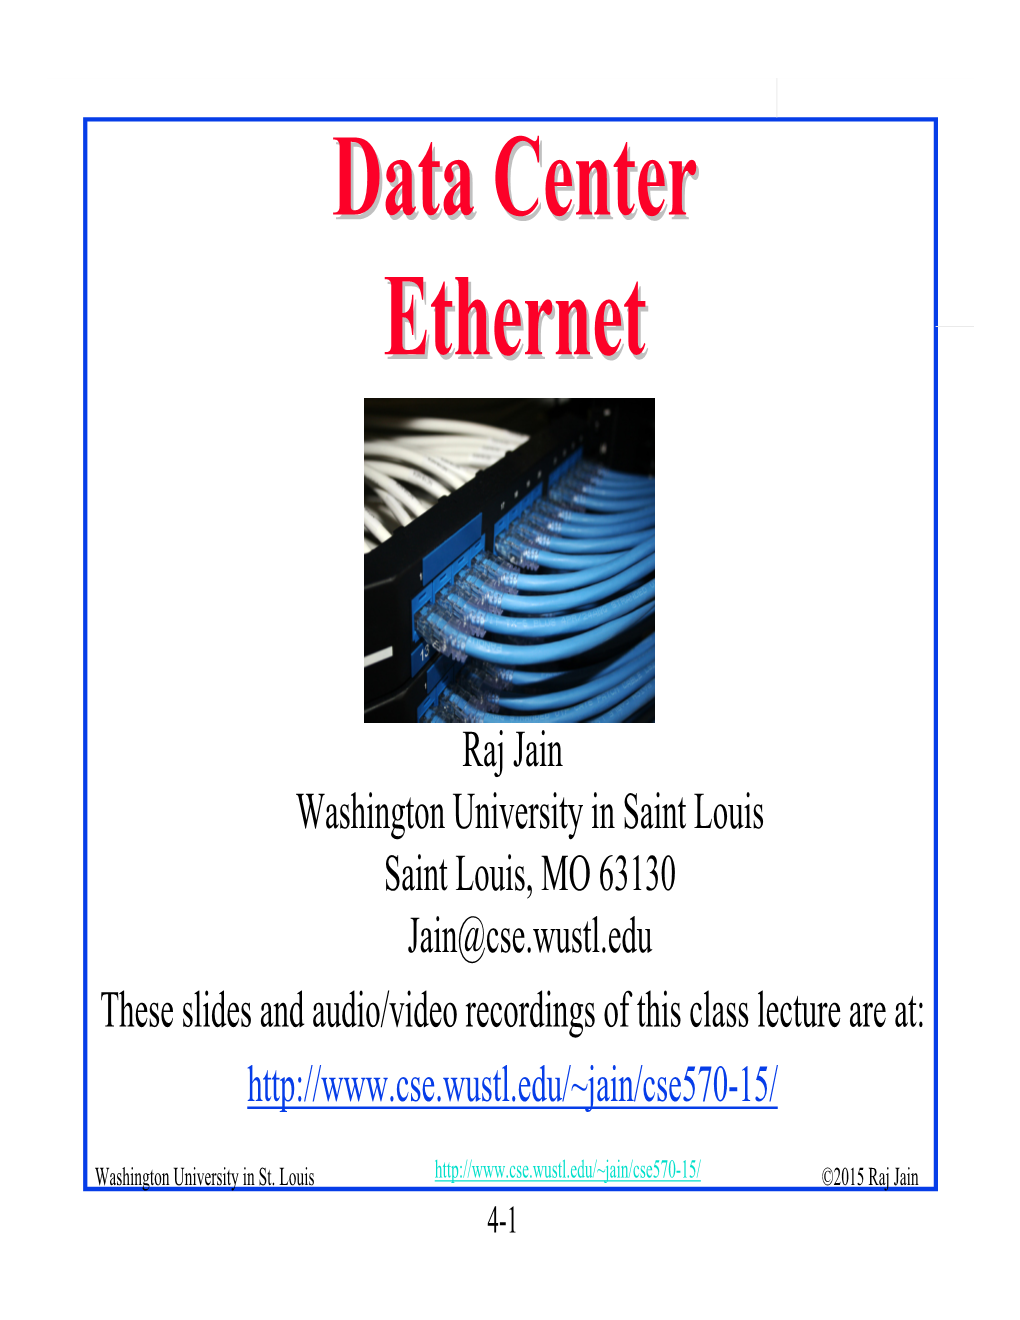 Data Center Ethernet 2